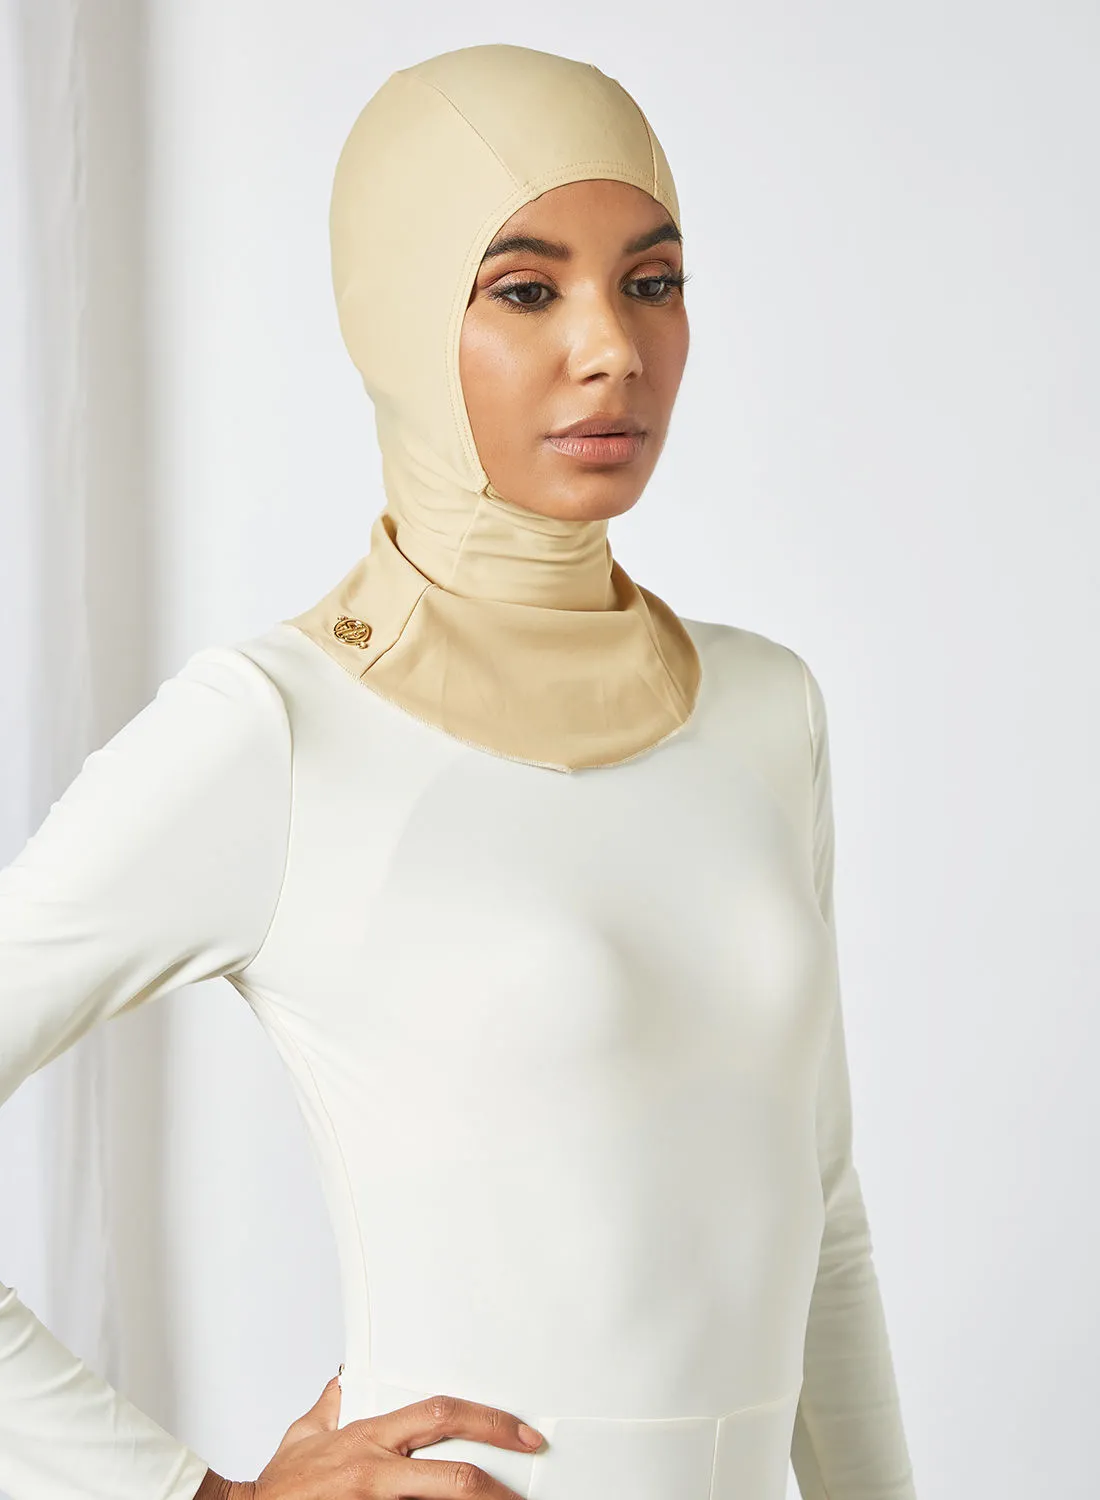 سيان ماري ملابس سباحة تغطية كاملة حجاب بيج